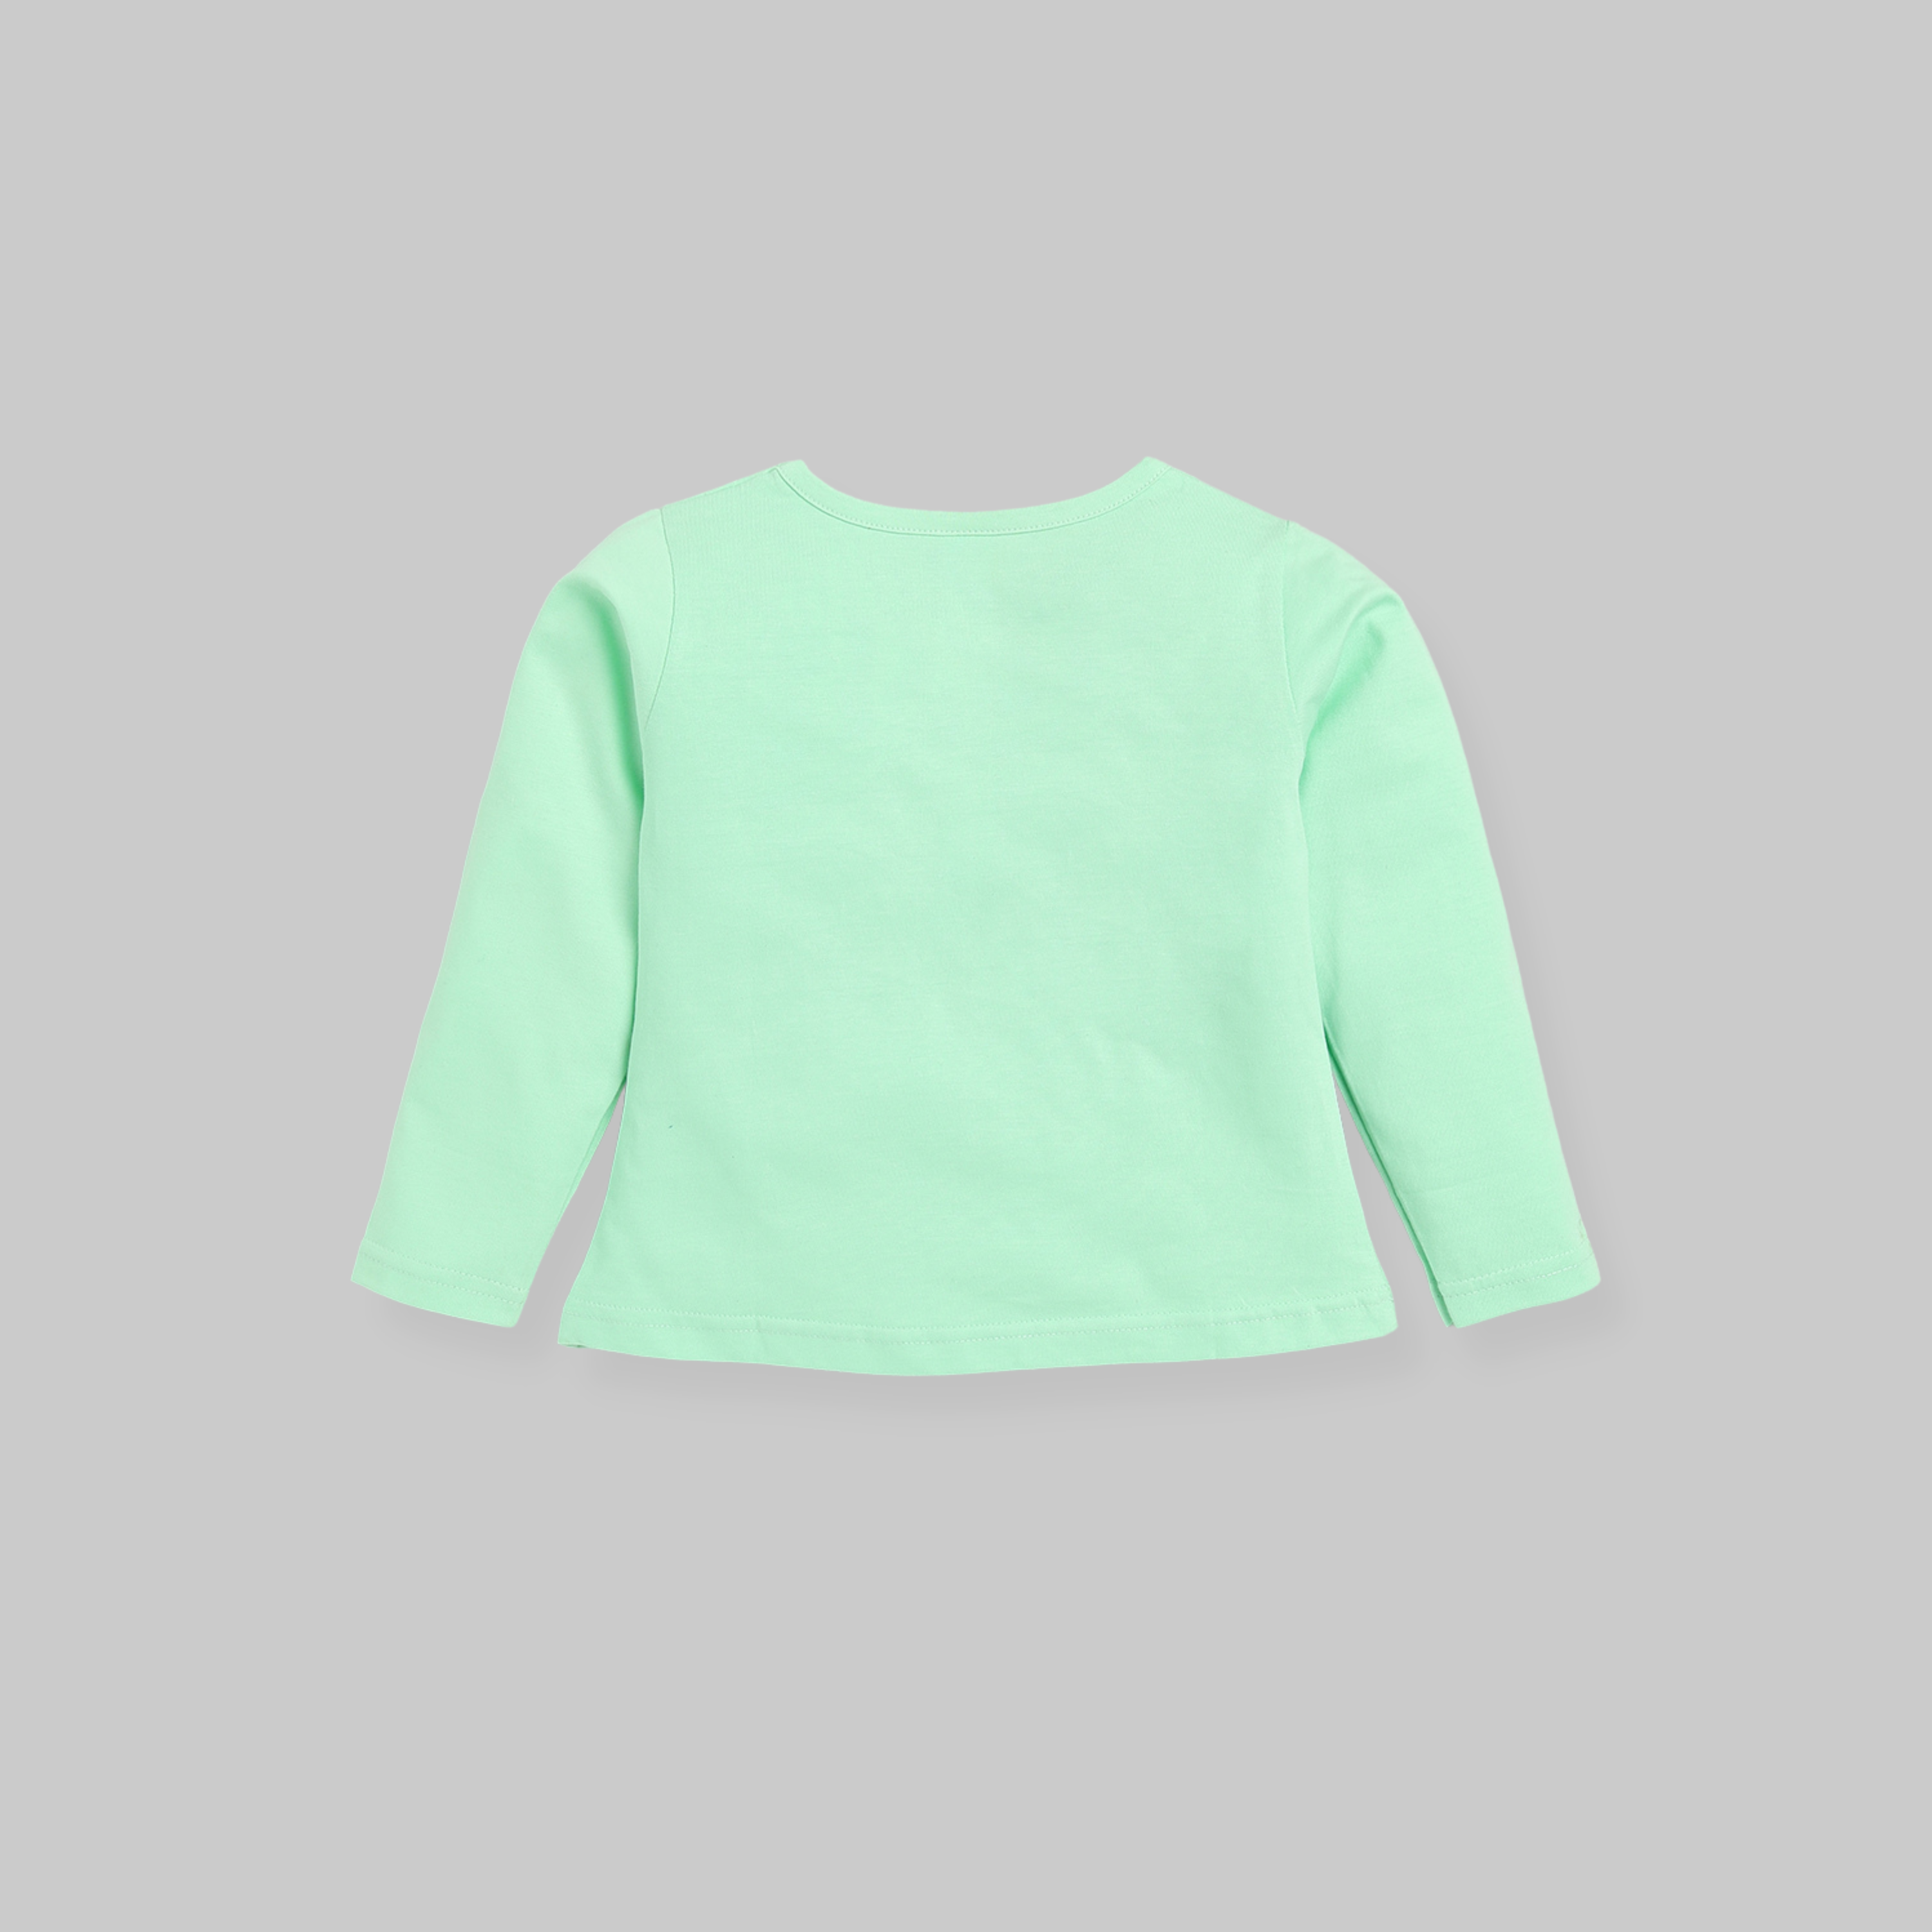 Full Sleeves Nightsuit - Green